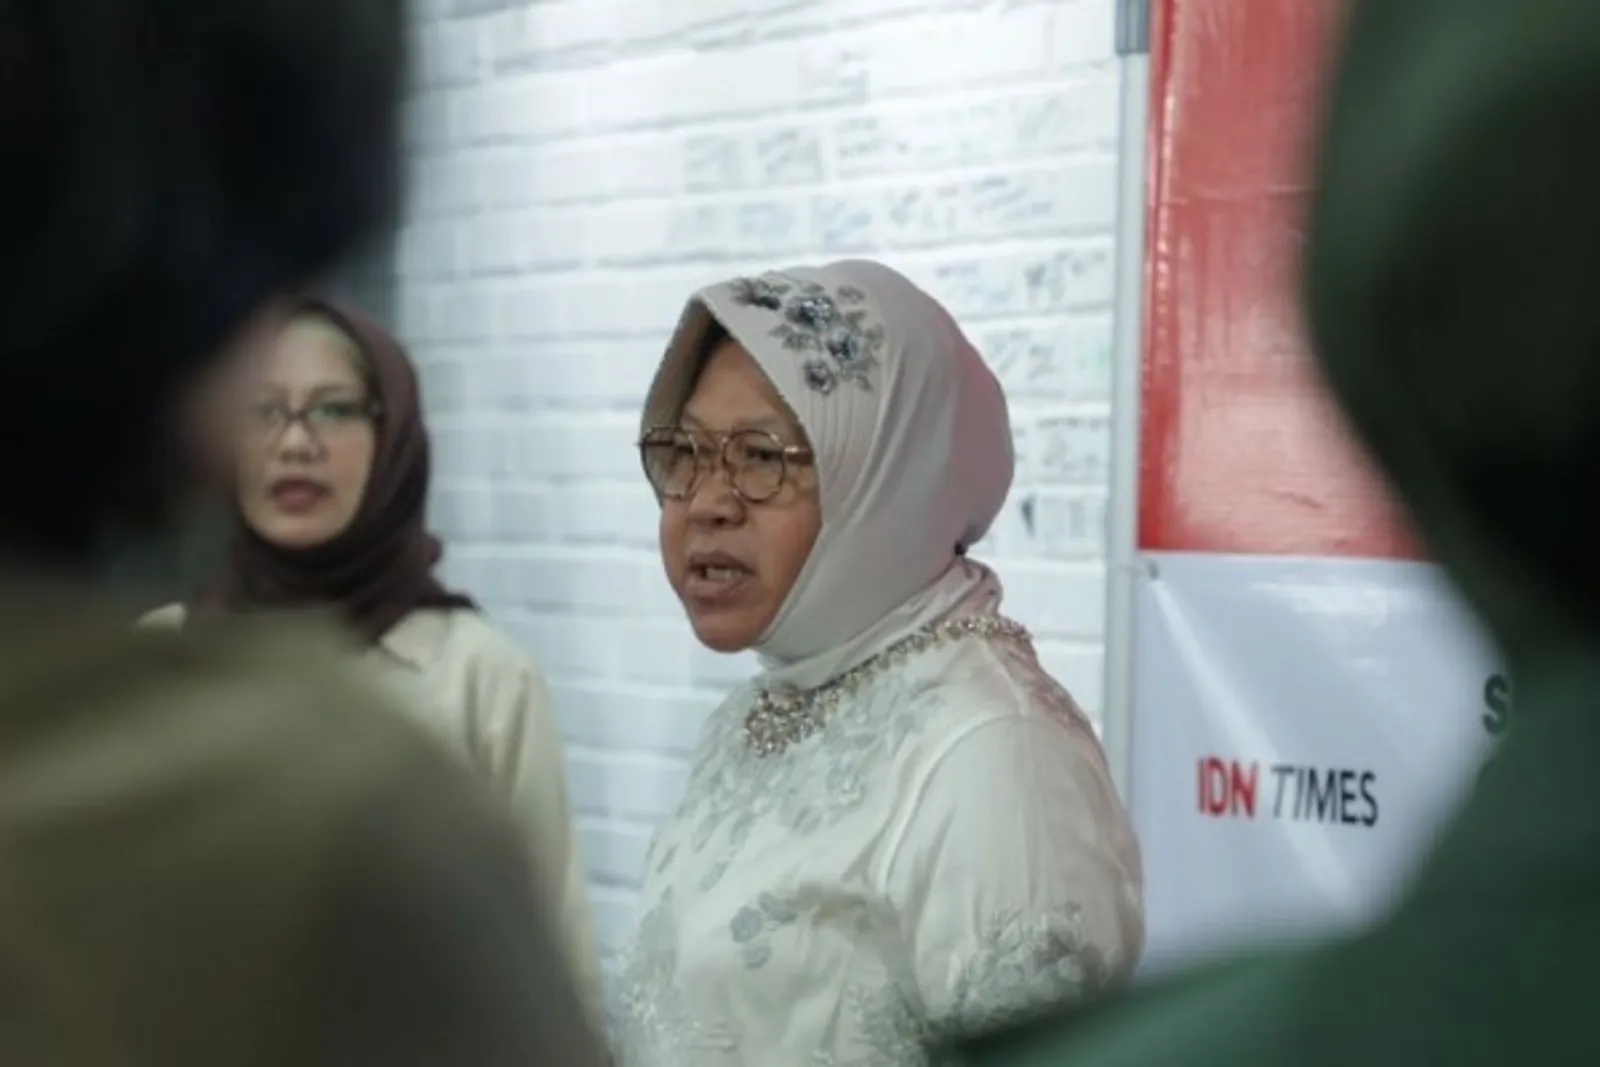 Resmi! Presiden Jokowi Tunjuk Sandiaga Uno & Tri Risma Jadi Menteri